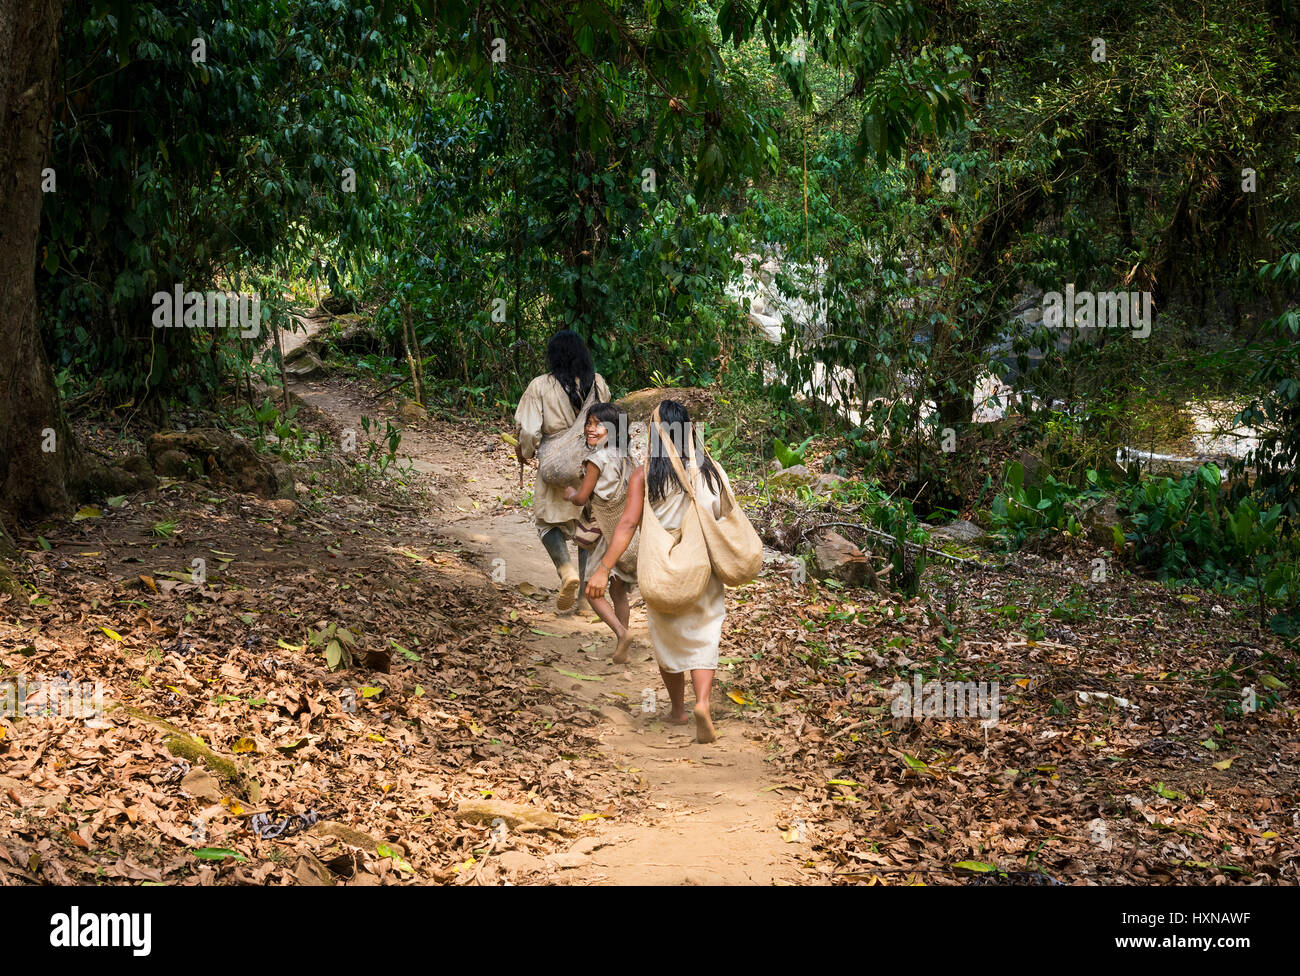 Sierra Nevada de Santa Marta, Kolumbien - 8. März 2014: Kogi Familie gehen in eine Spur im Wald in der Sierra Nevada de Santa Marta, Kolumbien Stockfoto